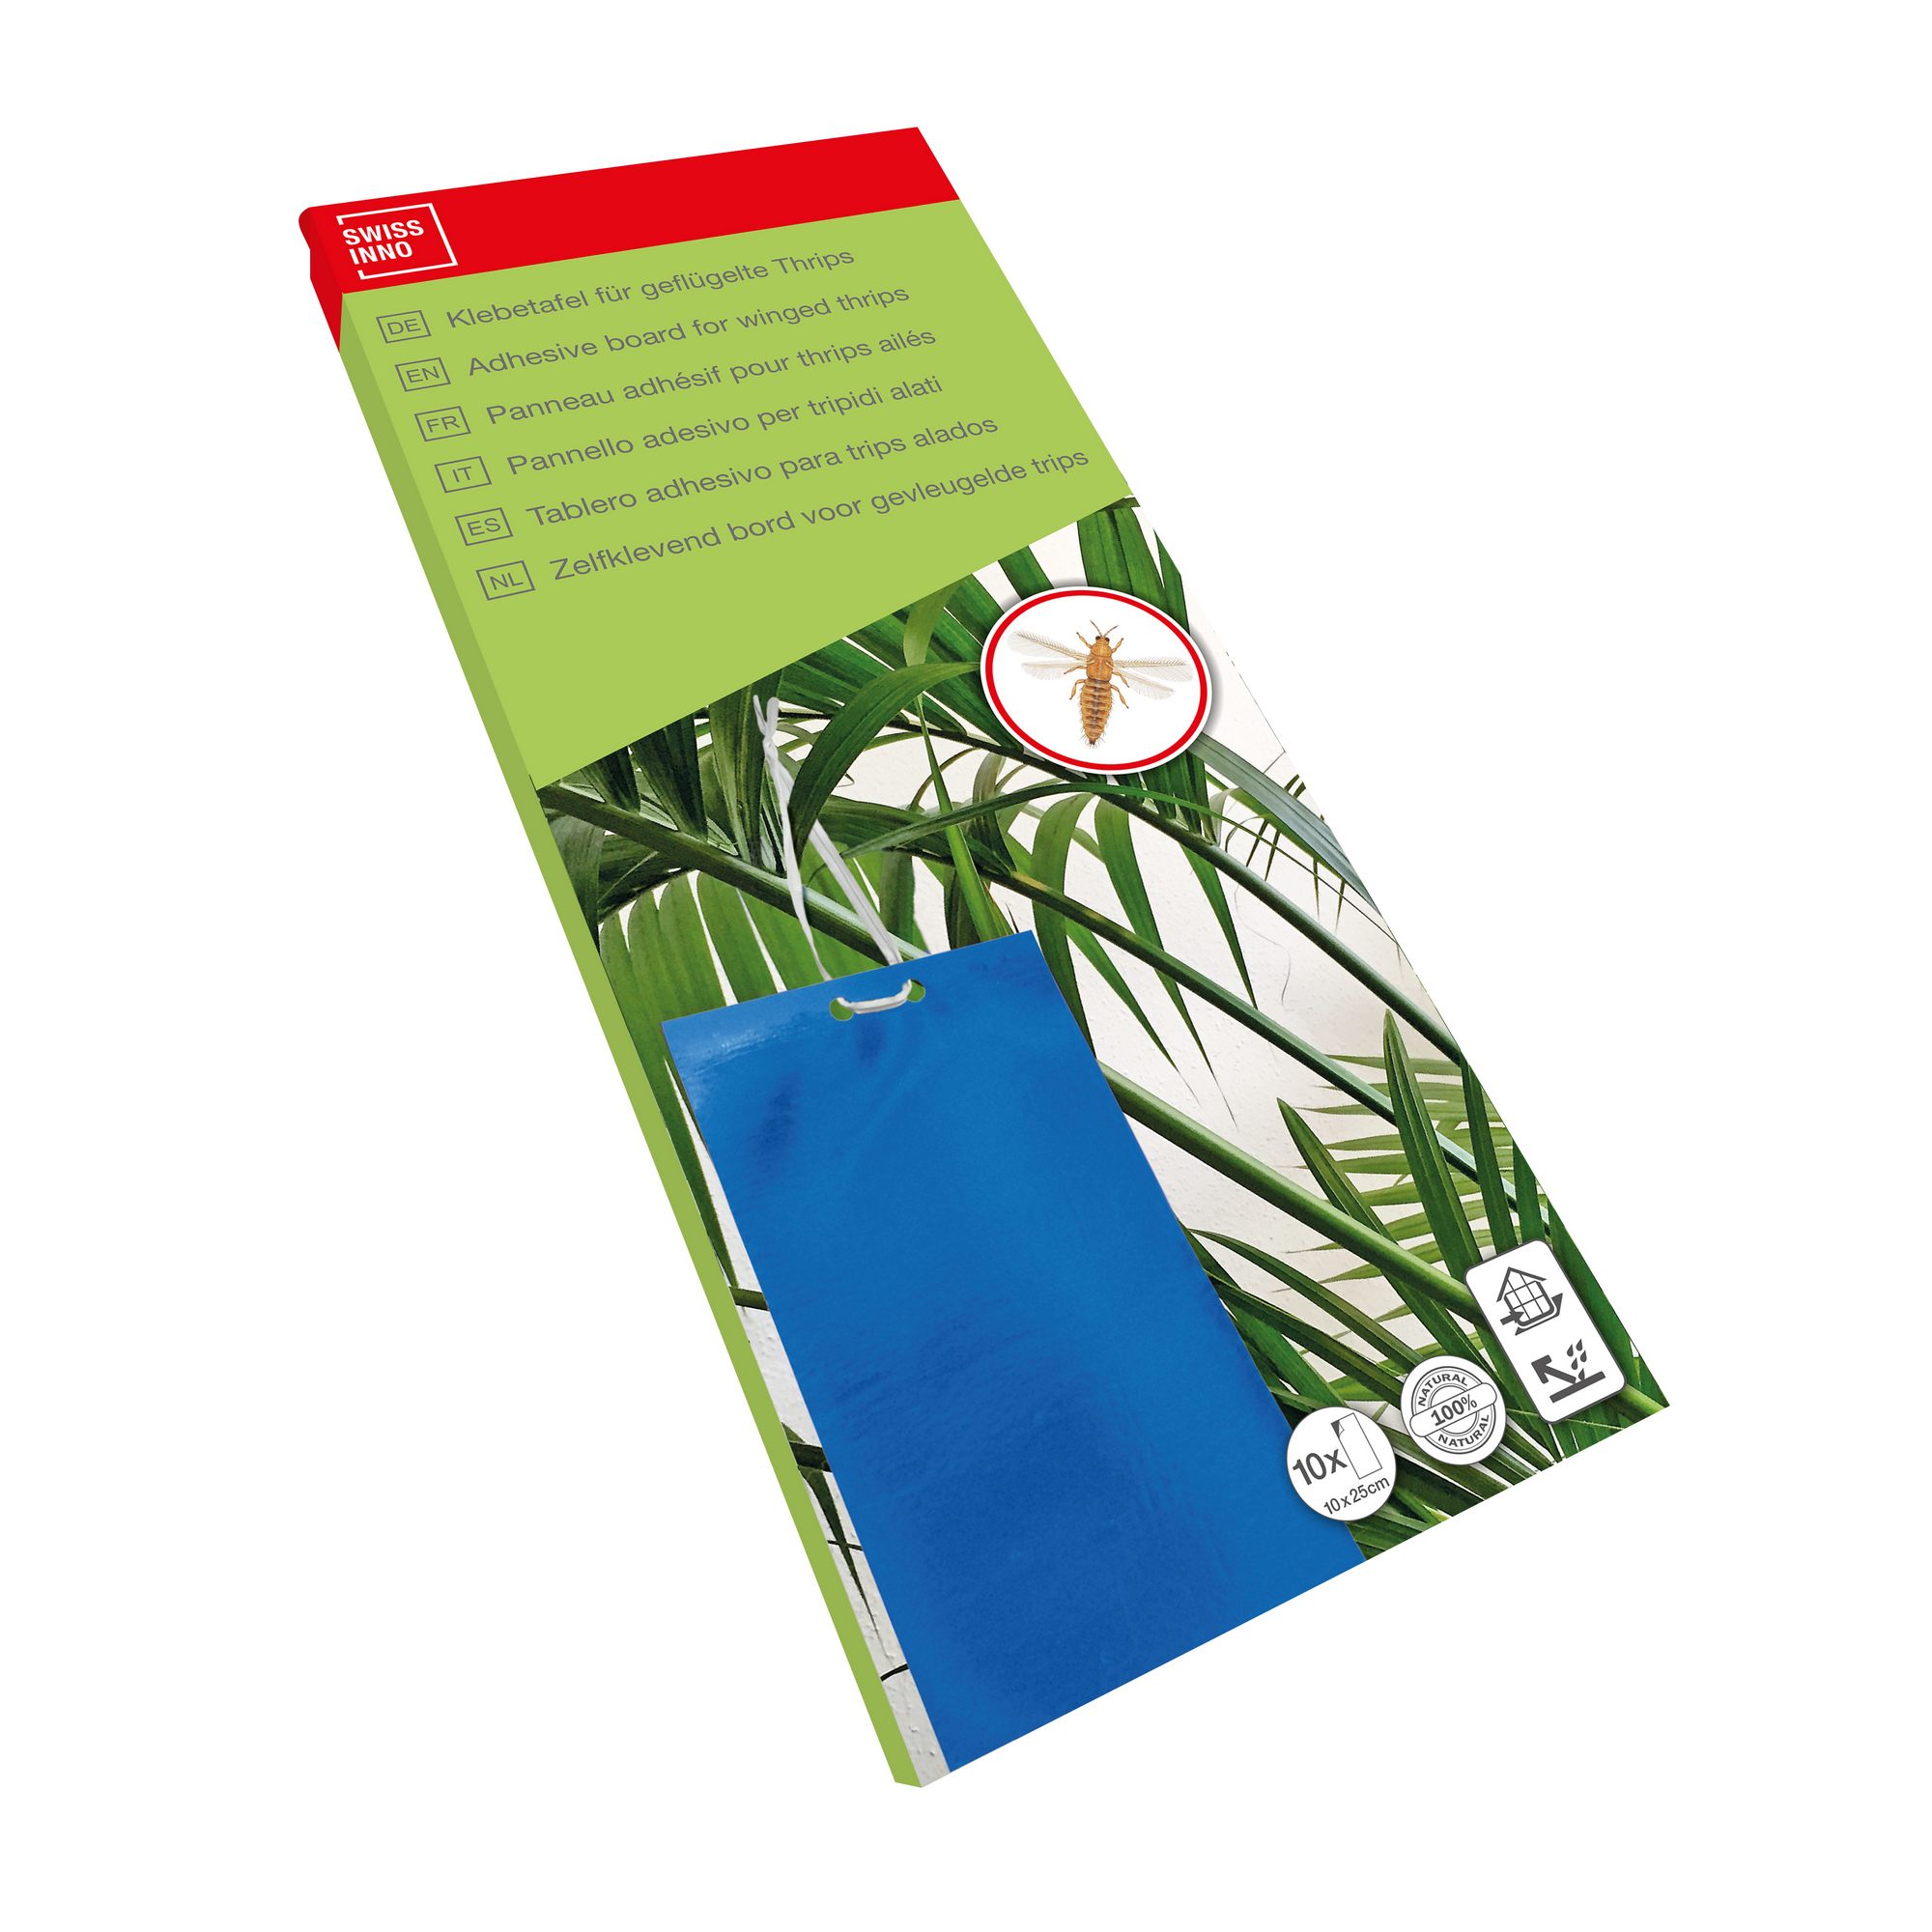 Insekten-Klebetafeln für geflügelte Thrips blau 10 Stück + product picture